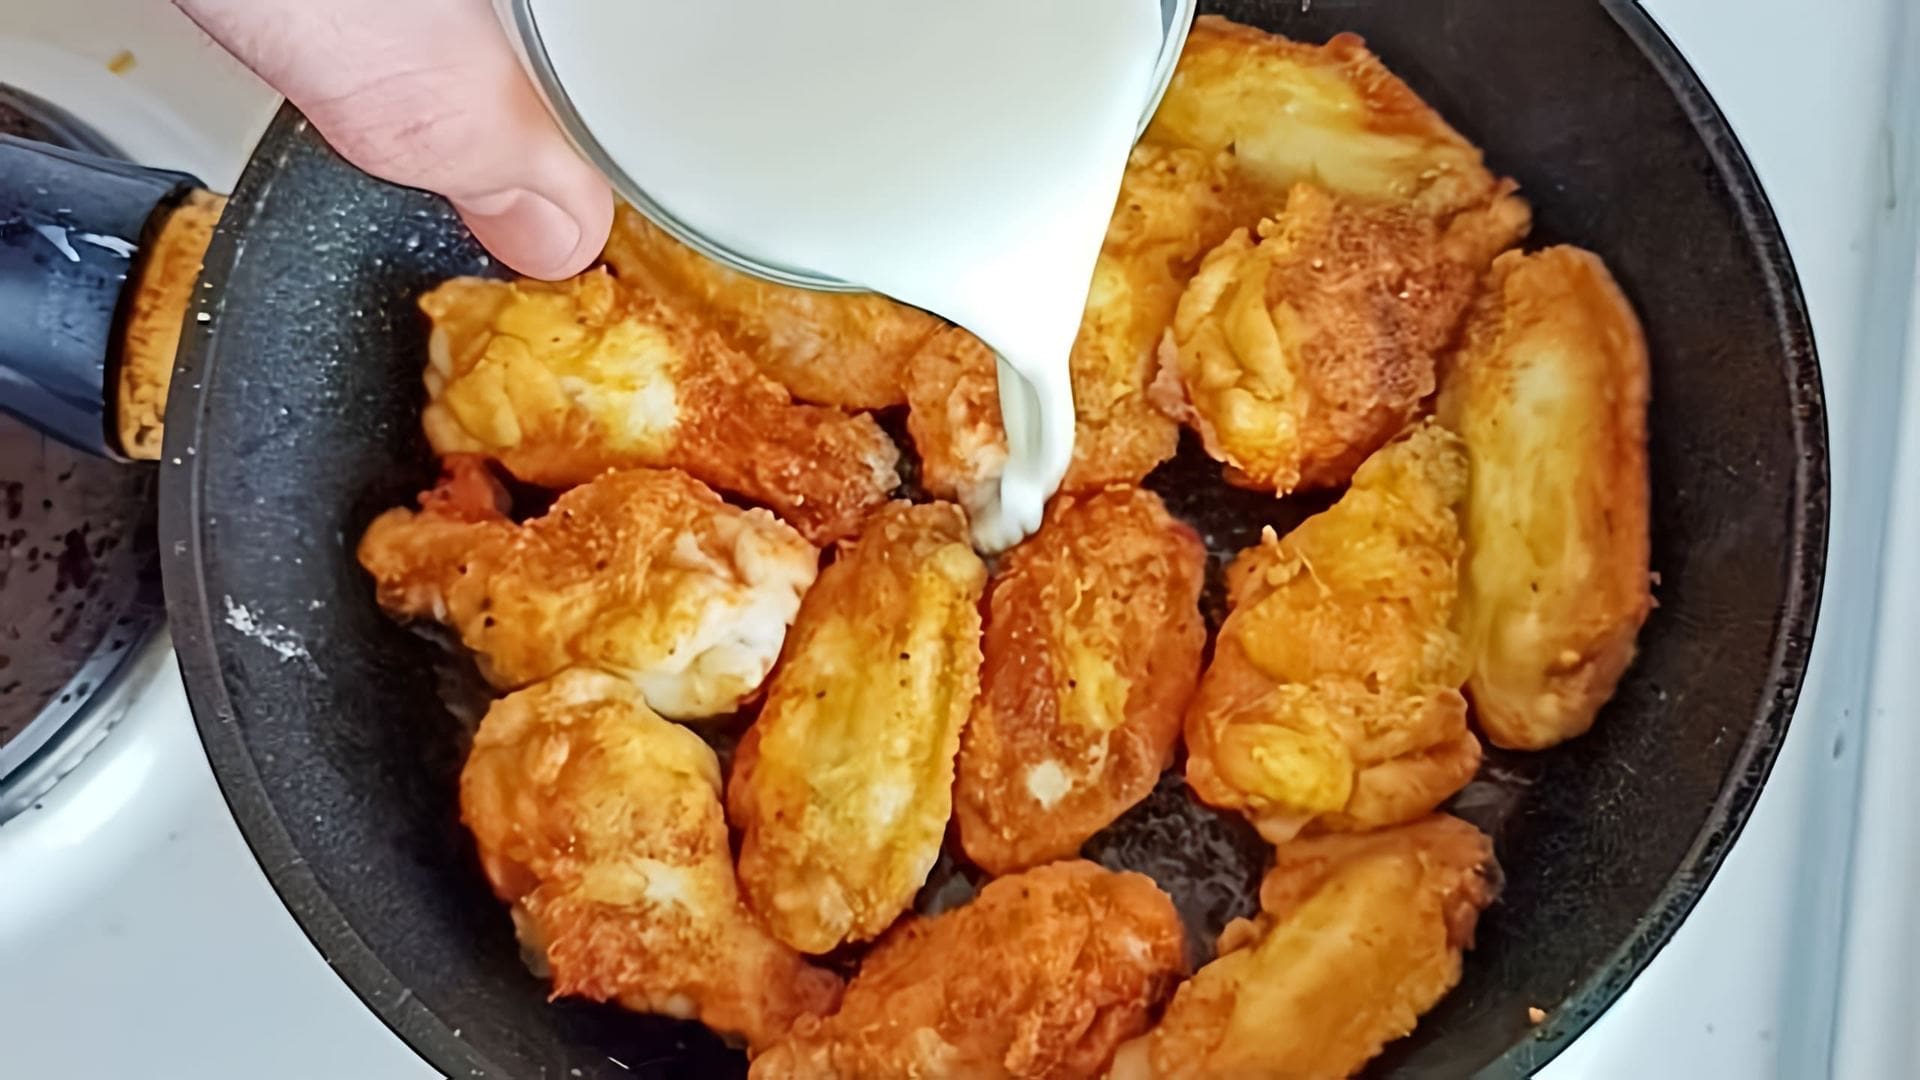 Удивительный рецепт куриных крылышек на сковороде!

В этом видео-ролике вы увидите, как приготовить вкусные и сочные куриные крылышки на сковороде